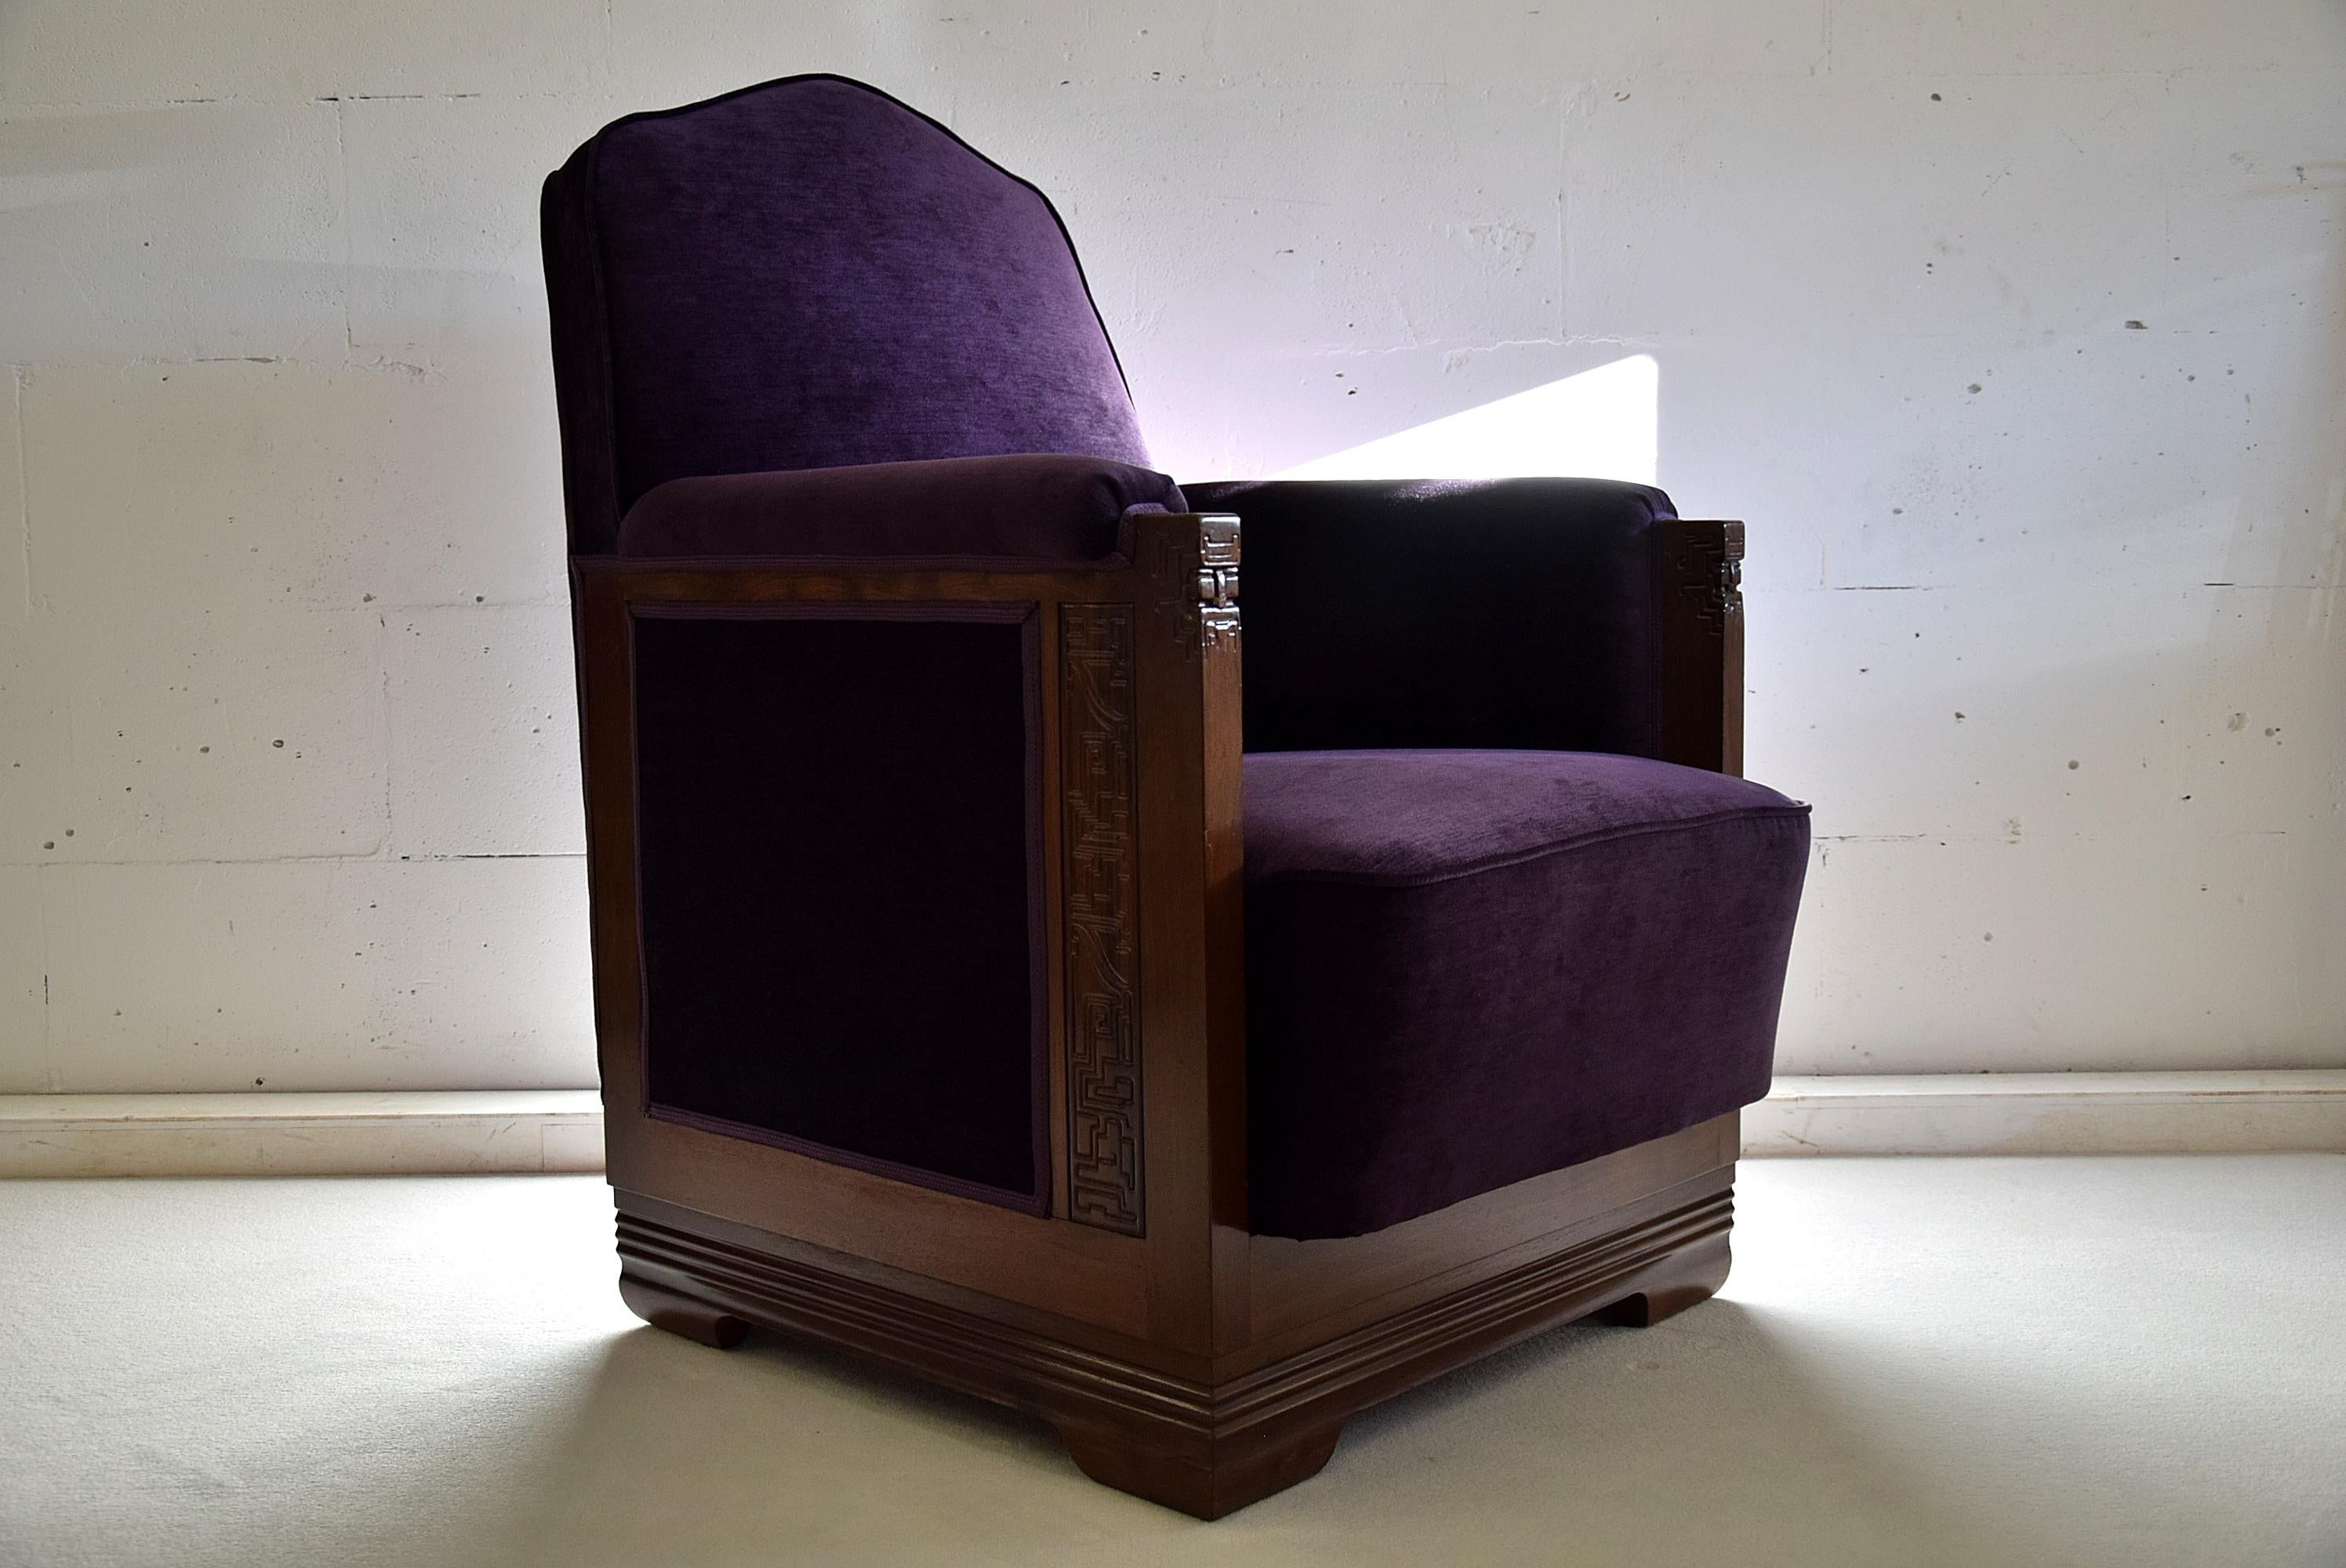 Suchen Sie nach einer einzigartigen und eleganten Ergänzung für Ihr Zuhause oder Ihr Büro? Diese atemberaubenden Loungesessel wurden von C.A. entworfen. Löwen-Gütesiegel. Die mit Jatoba-Rahmen gefertigten und mit prächtigem violettem Samt